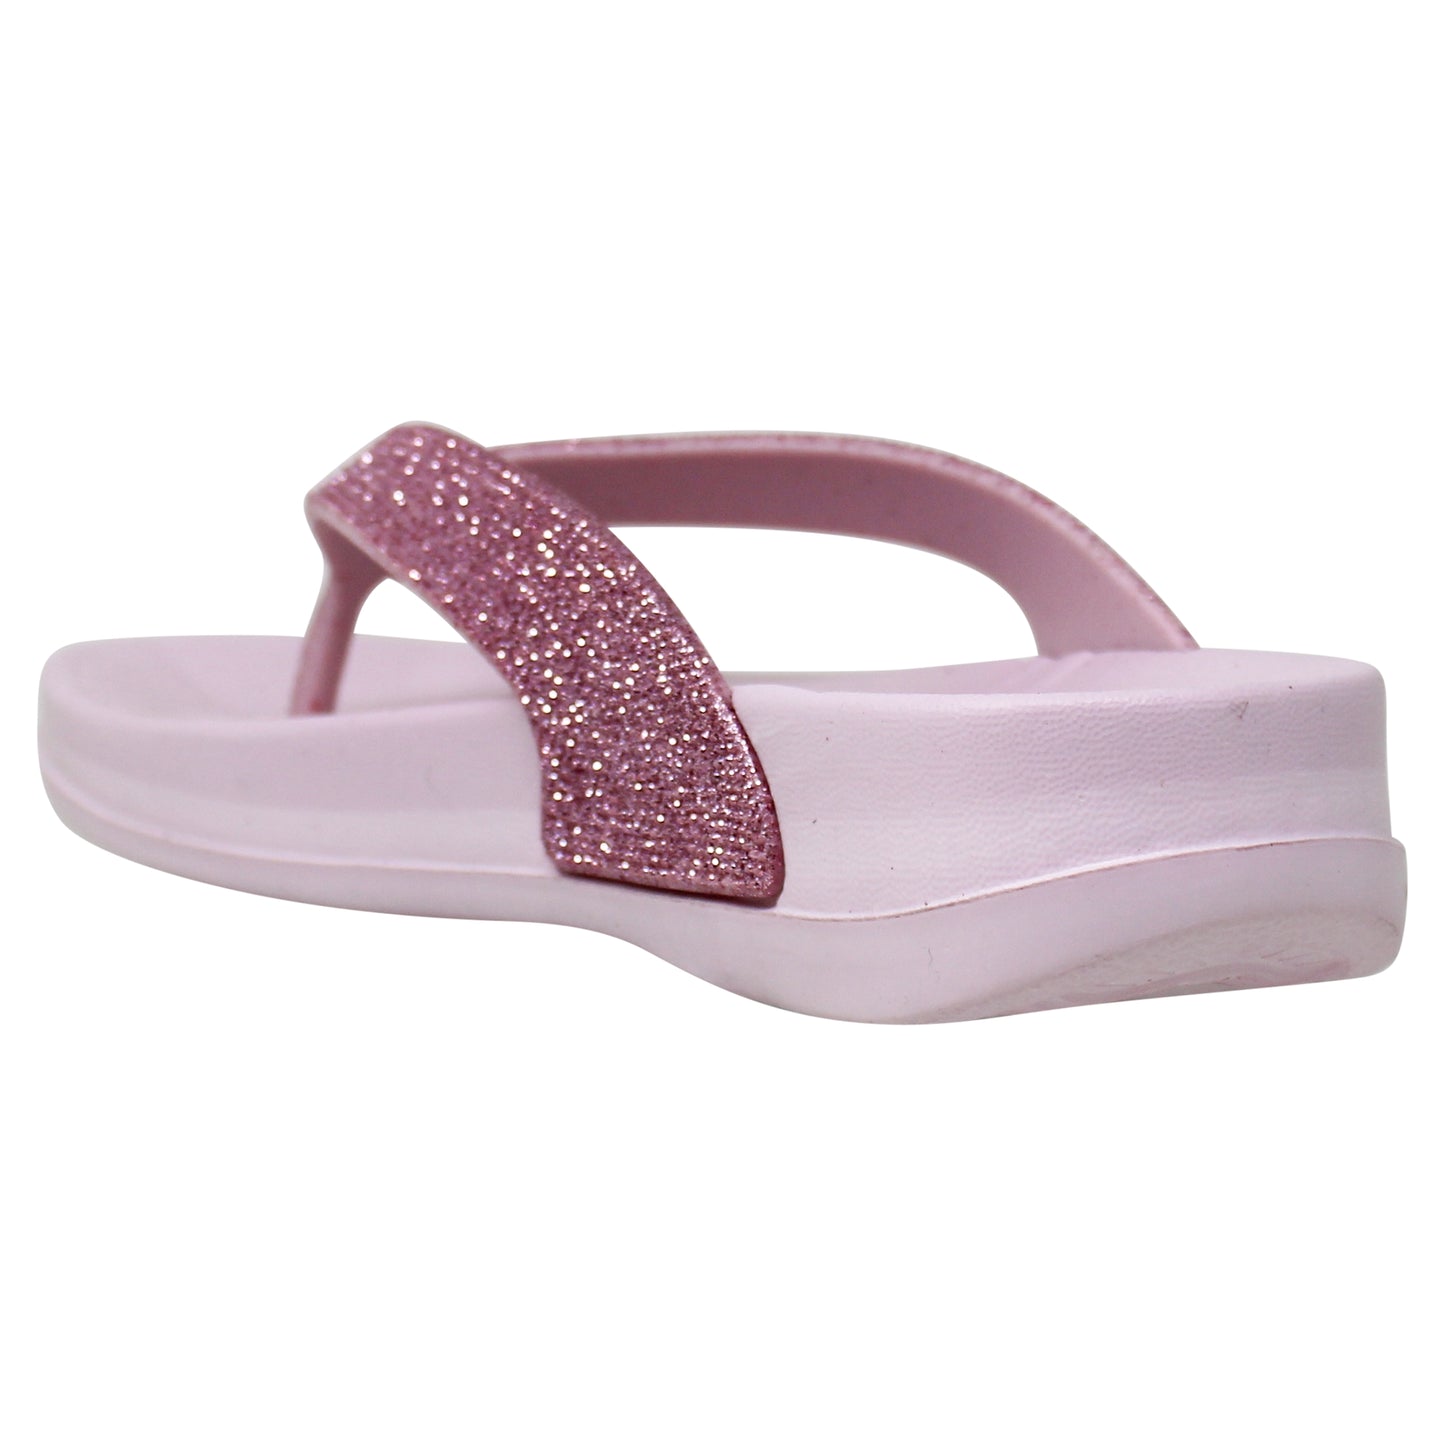 SOBEYO Womens Flat Platform Sandals Light-Weight Glitter Flip Flop Thong Pink